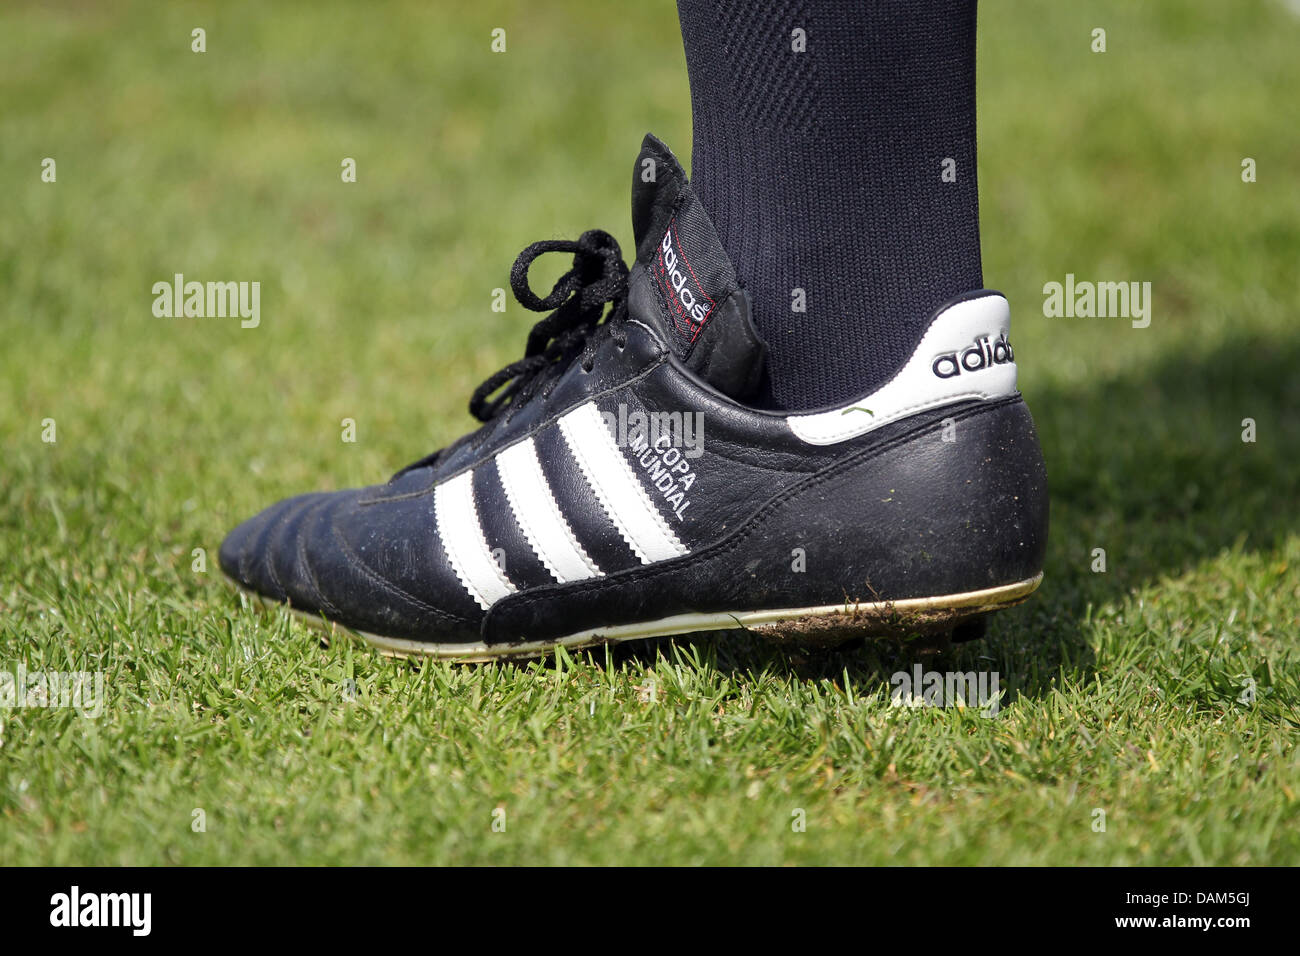 Copa mundial immagini e fotografie stock ad alta risoluzione - Alamy